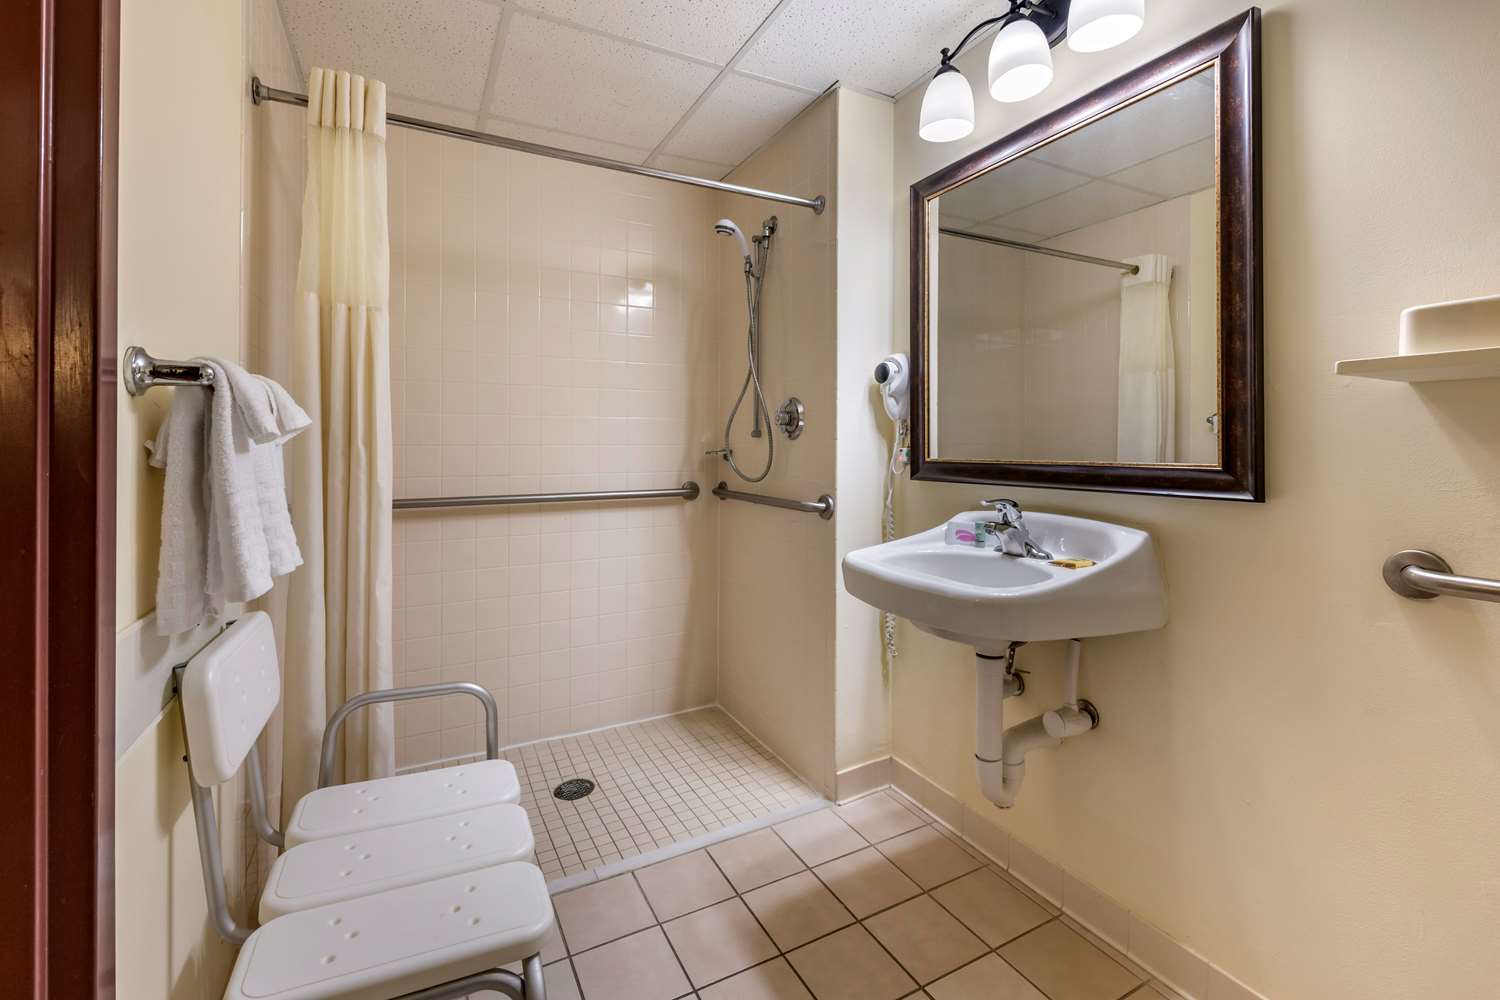  Grand D'Or (Grandeur) Toilet/Toiletries Bath Towel